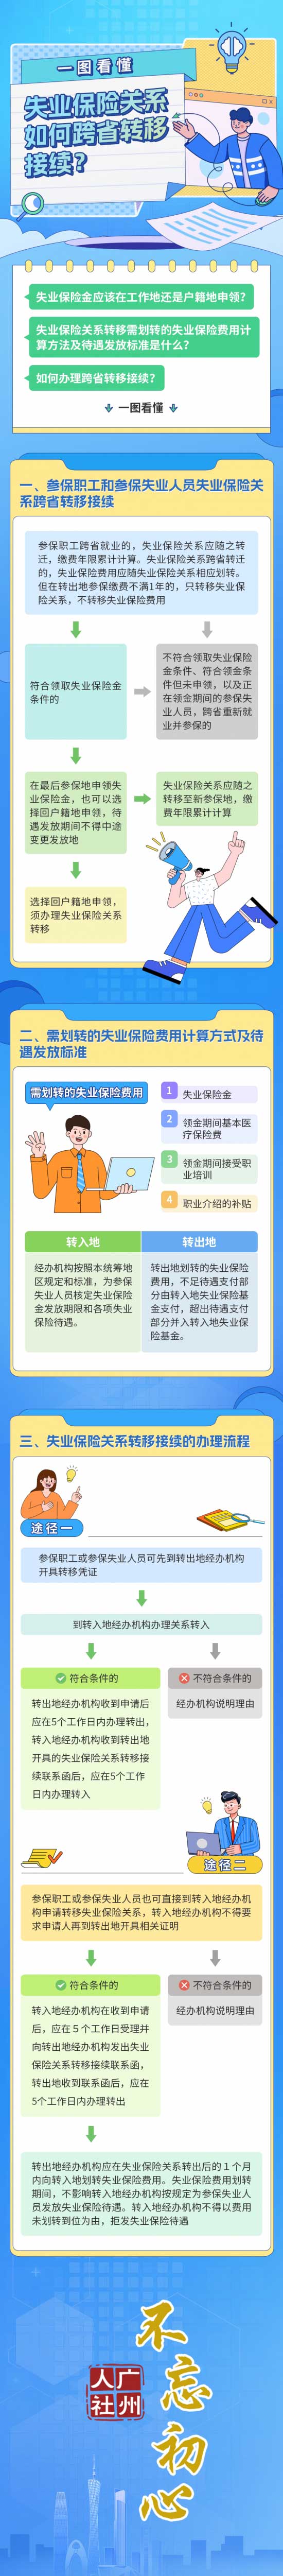 【一图读懂】广东省失业保险关系如何跨省转移接续